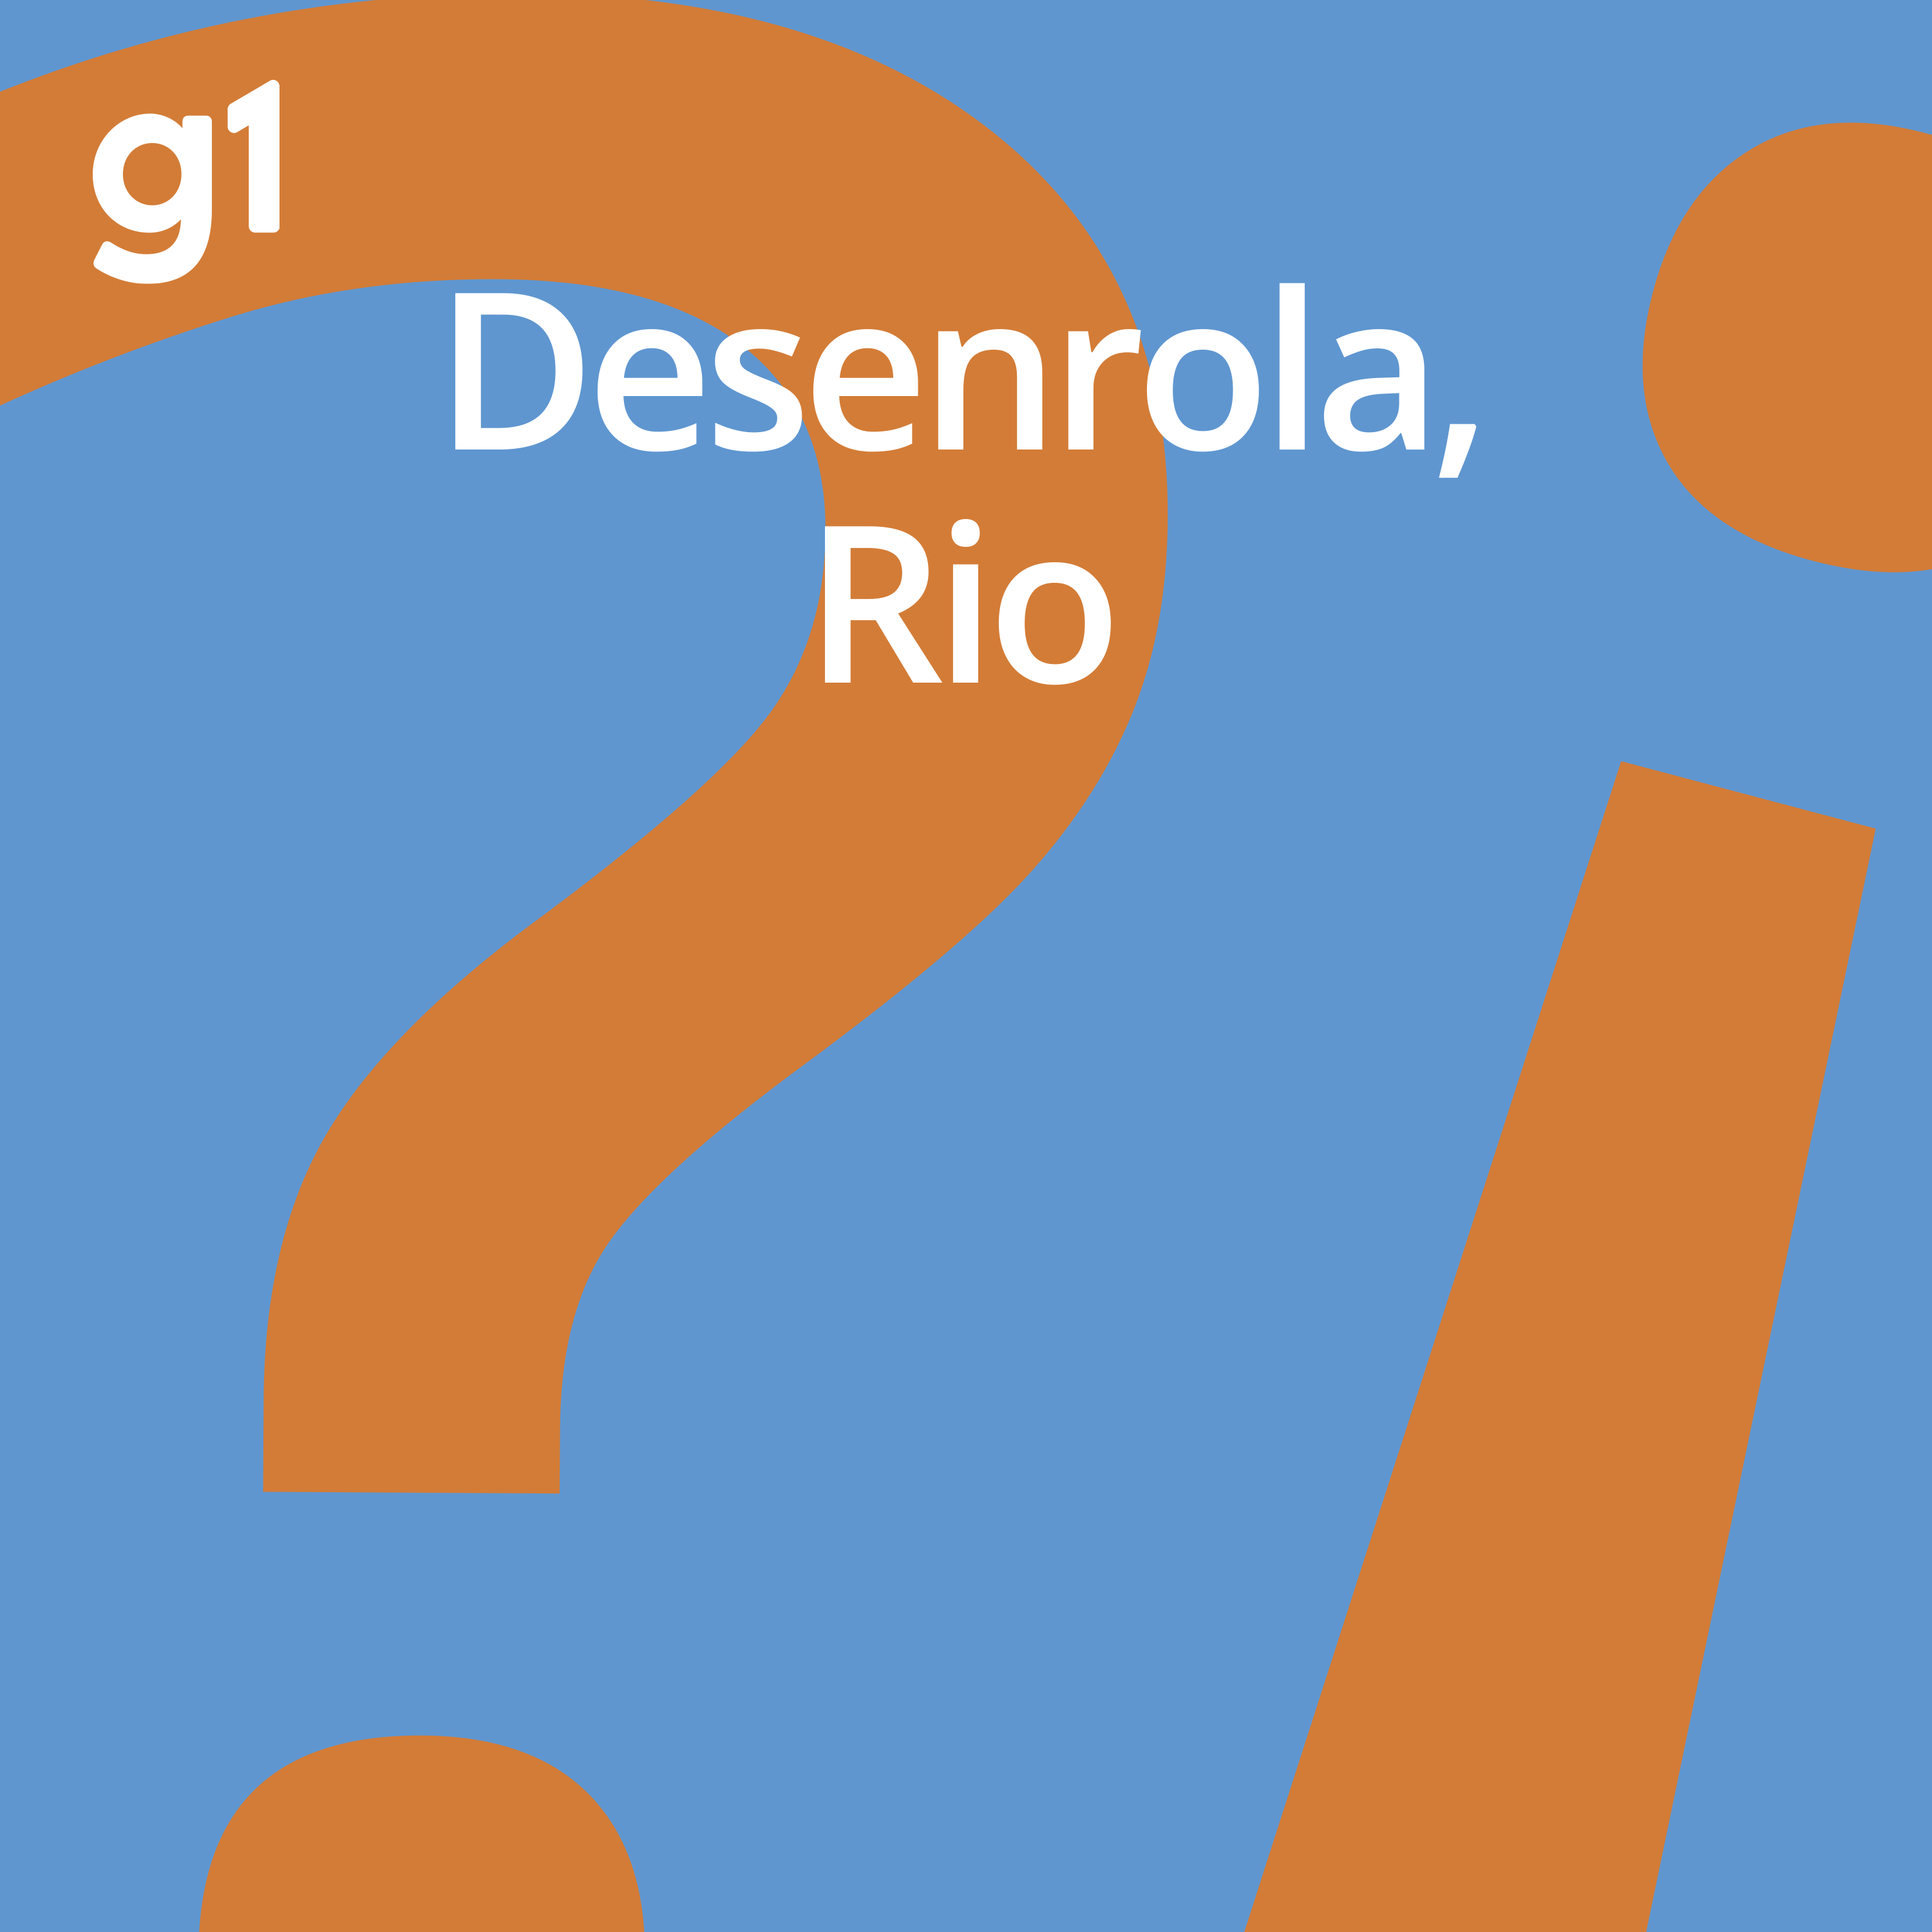 #95 Desenrola, Rio - O combate à corrupção na Prefeitura do Rio